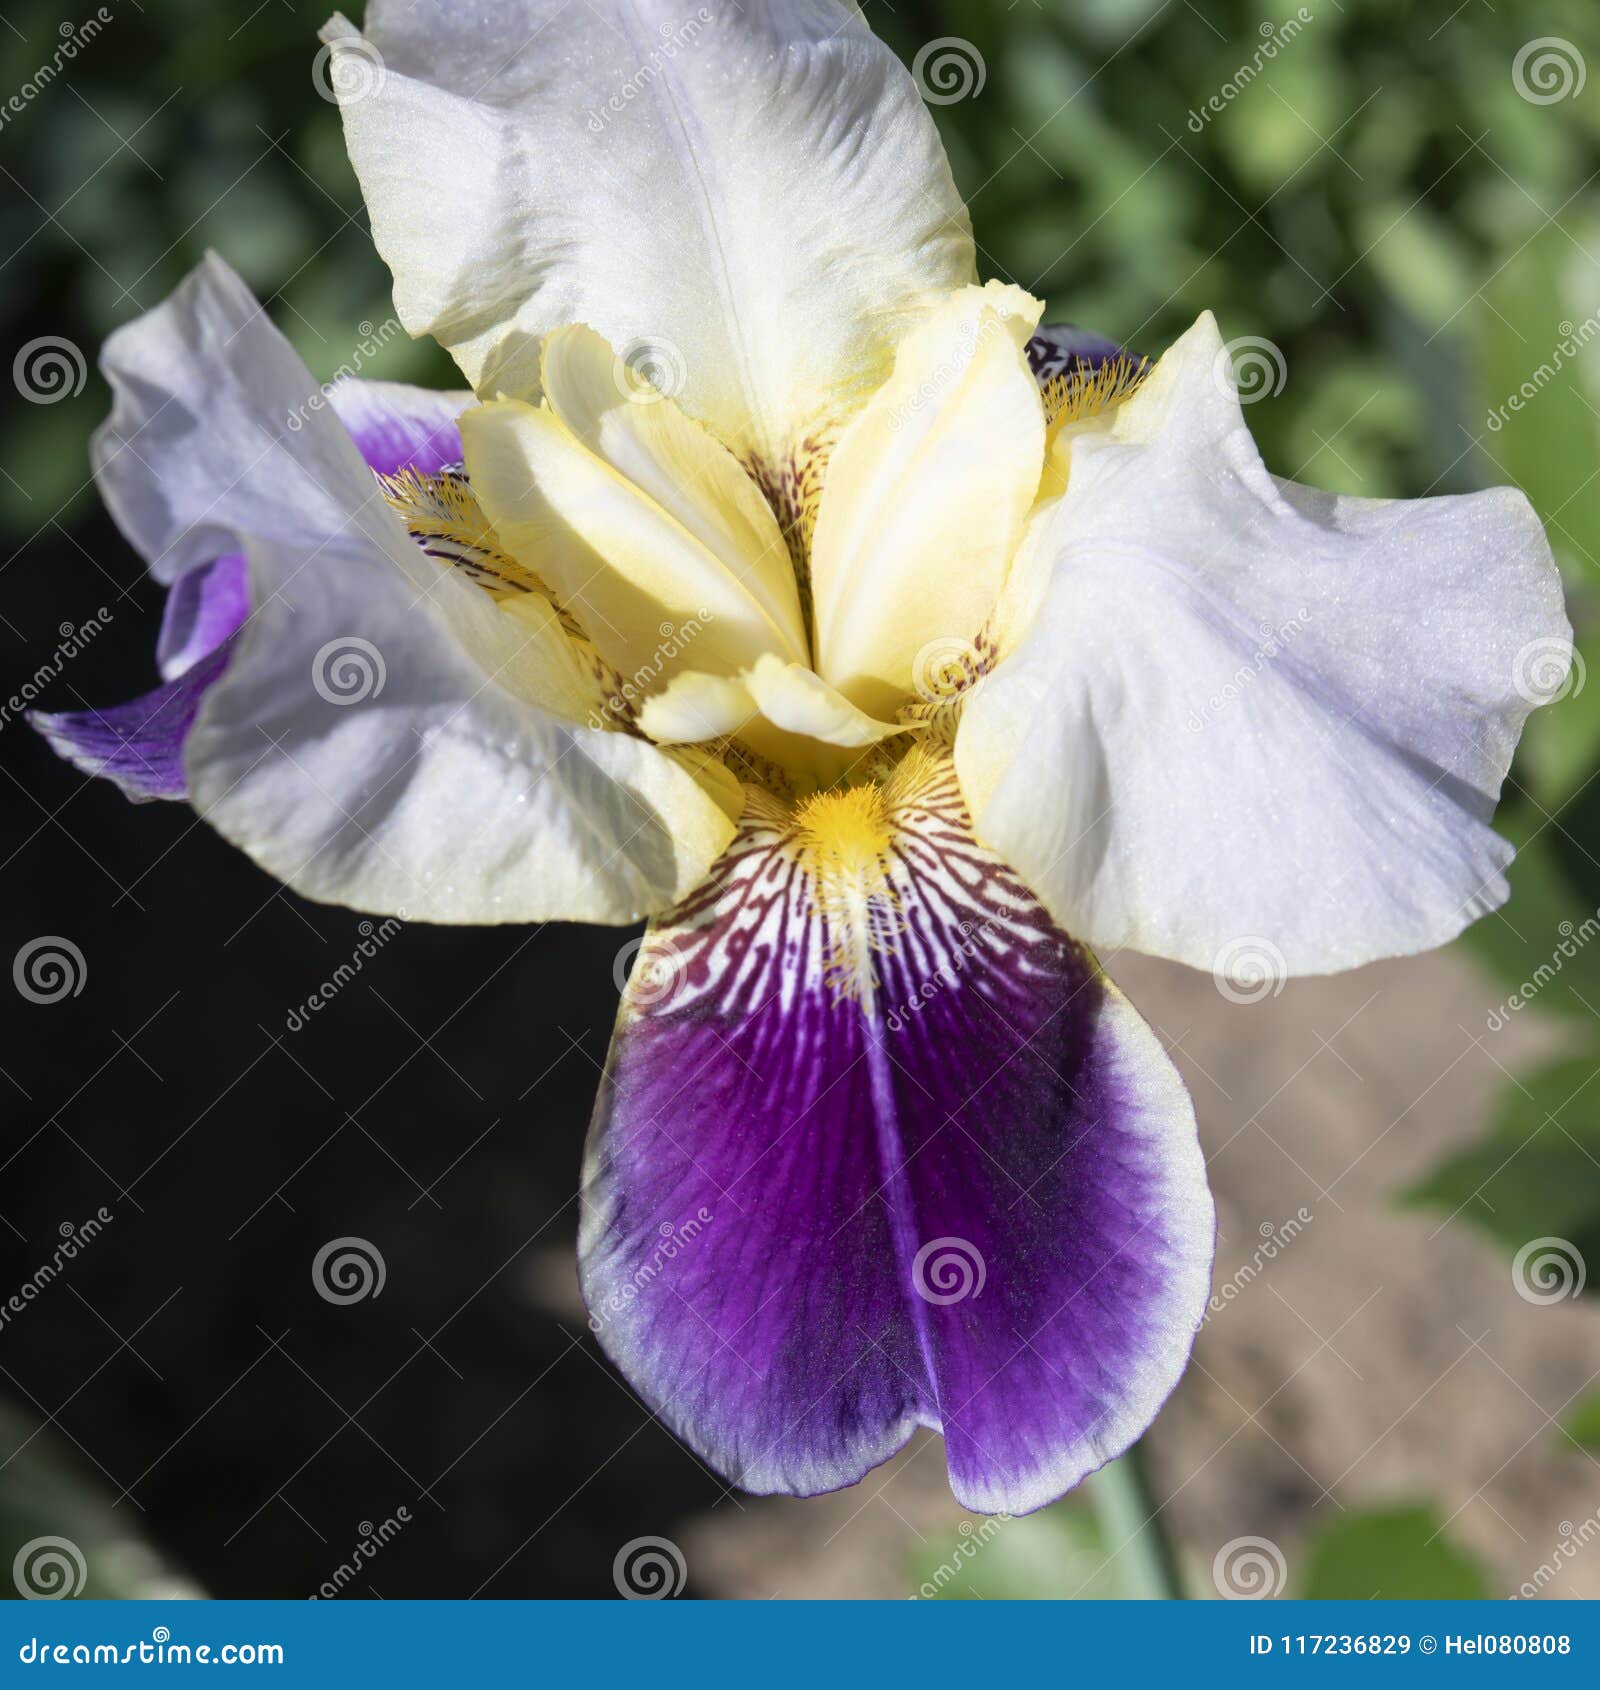 Irisez, Bel Iris De Blanc, Jaune Et Violet Image stock - Image du pétales,  violette: 117236829